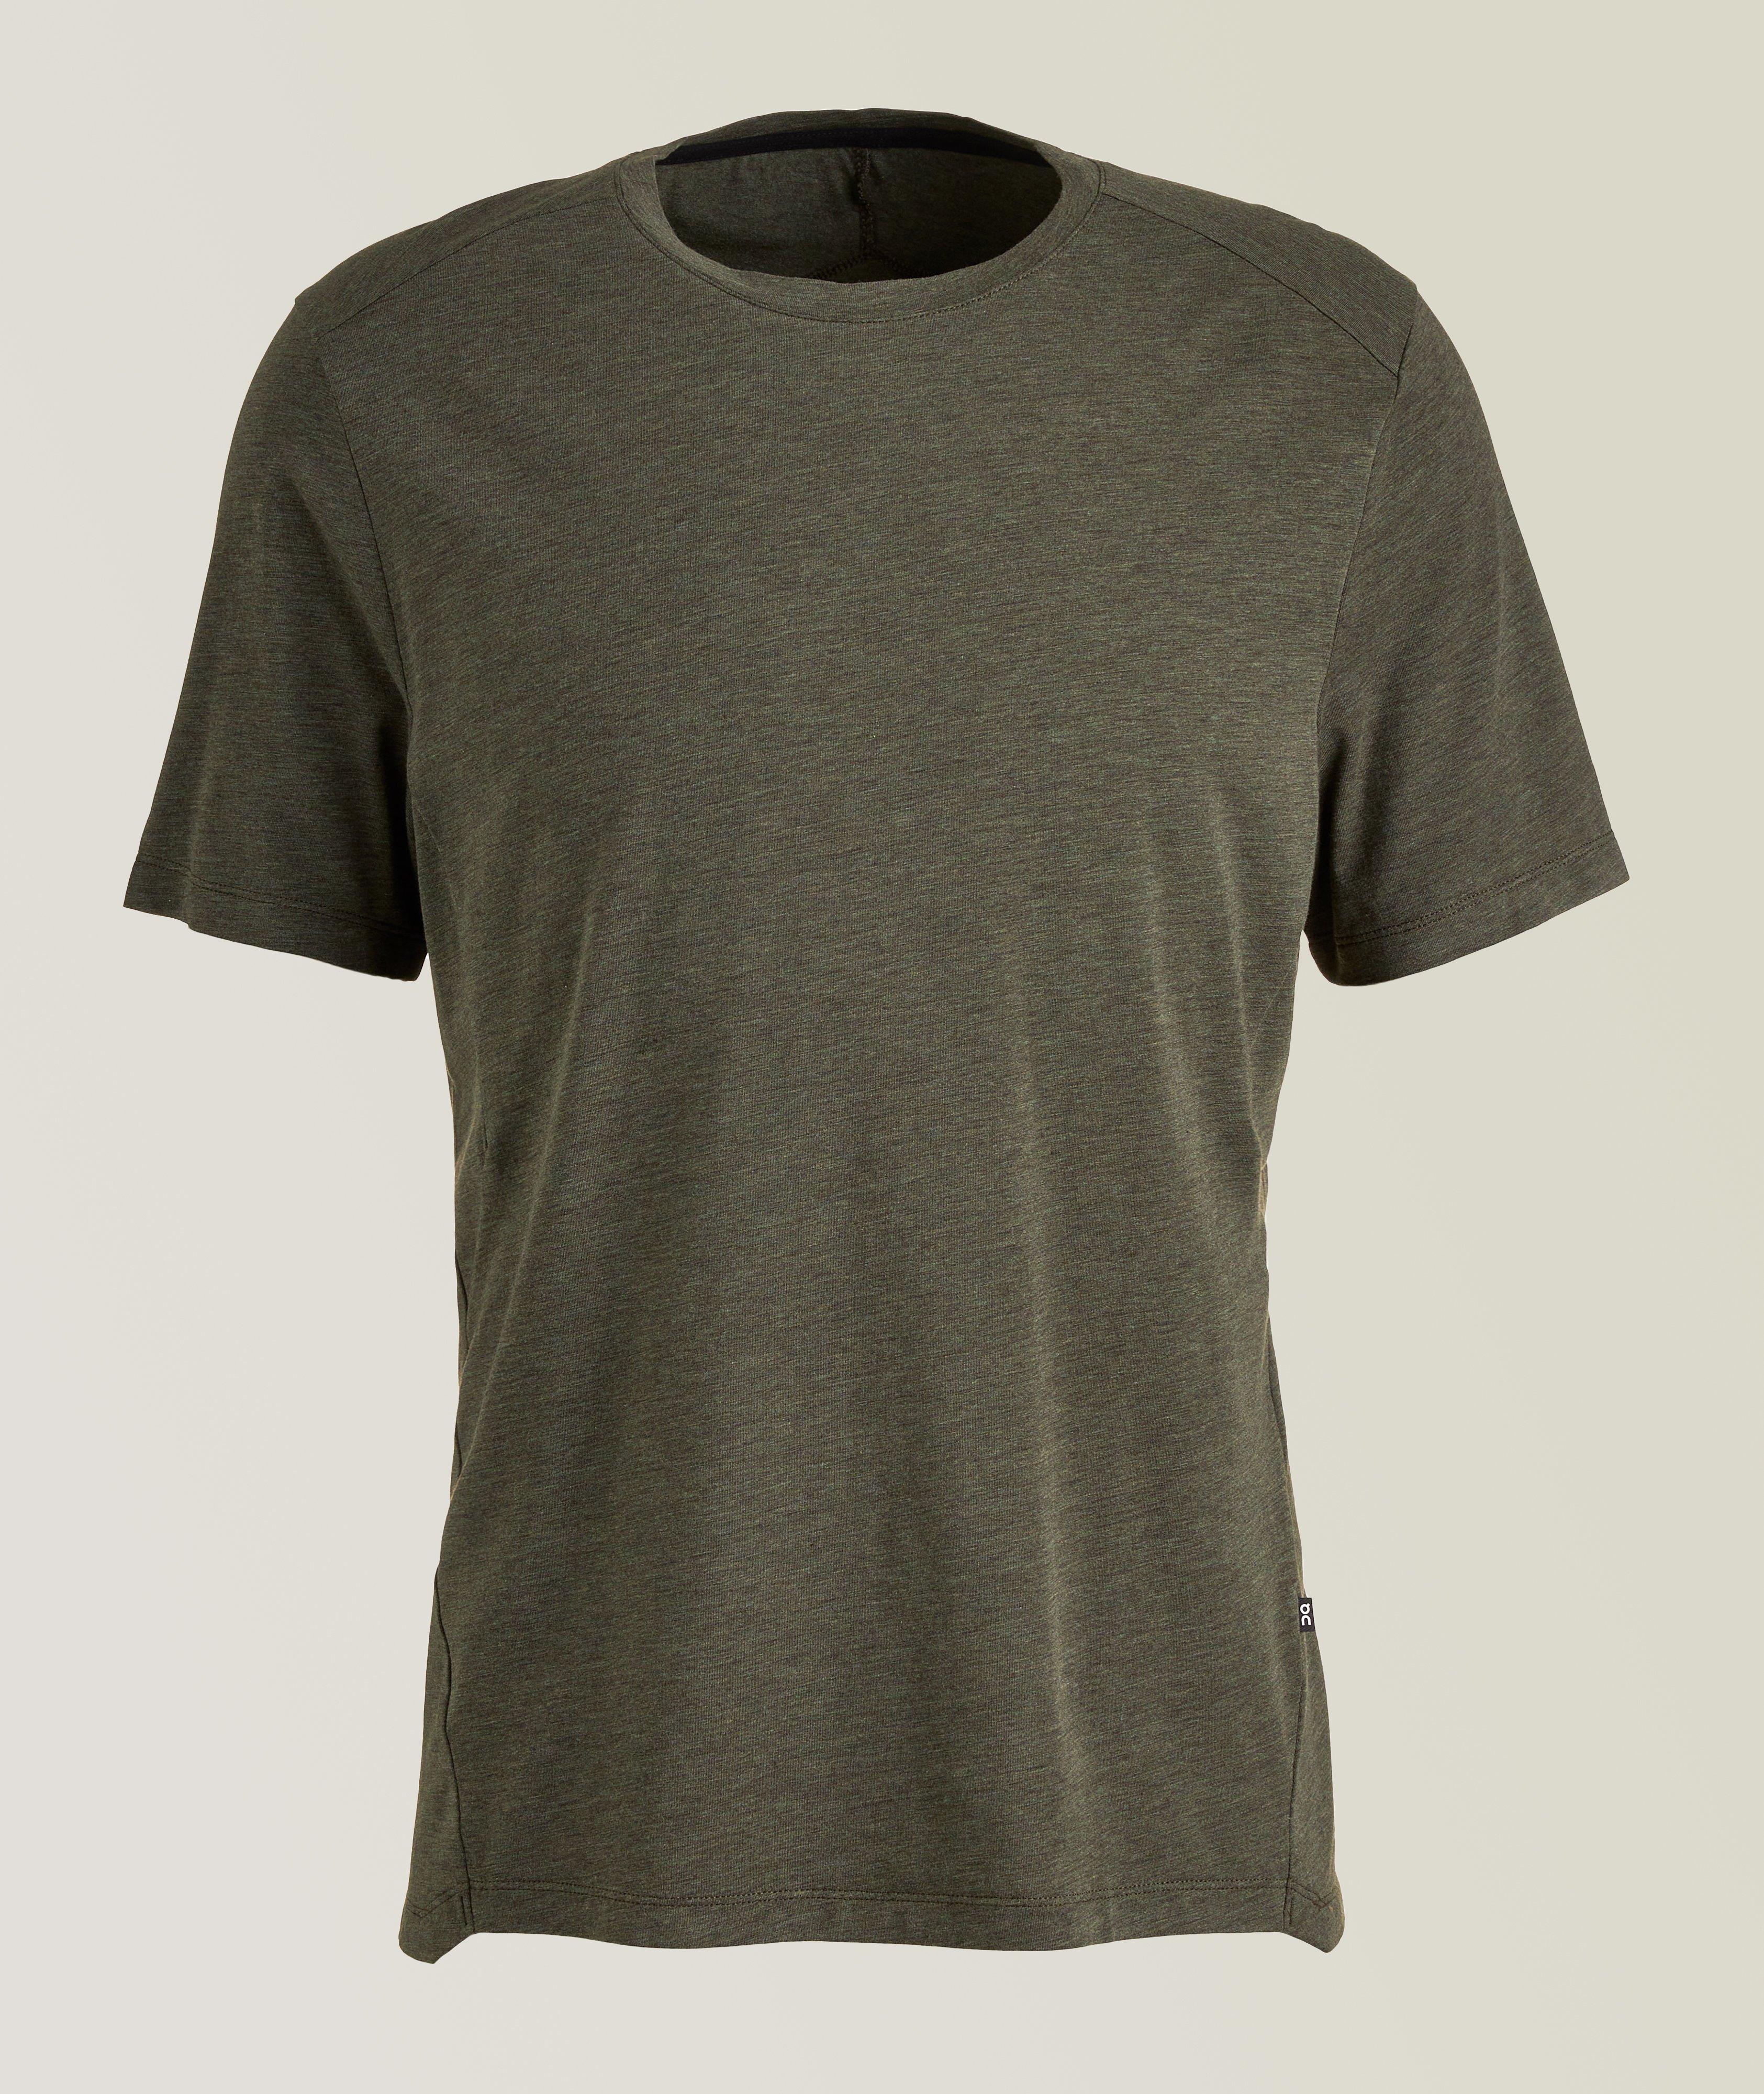 Cotton-Blend Active-T Shirt image 0